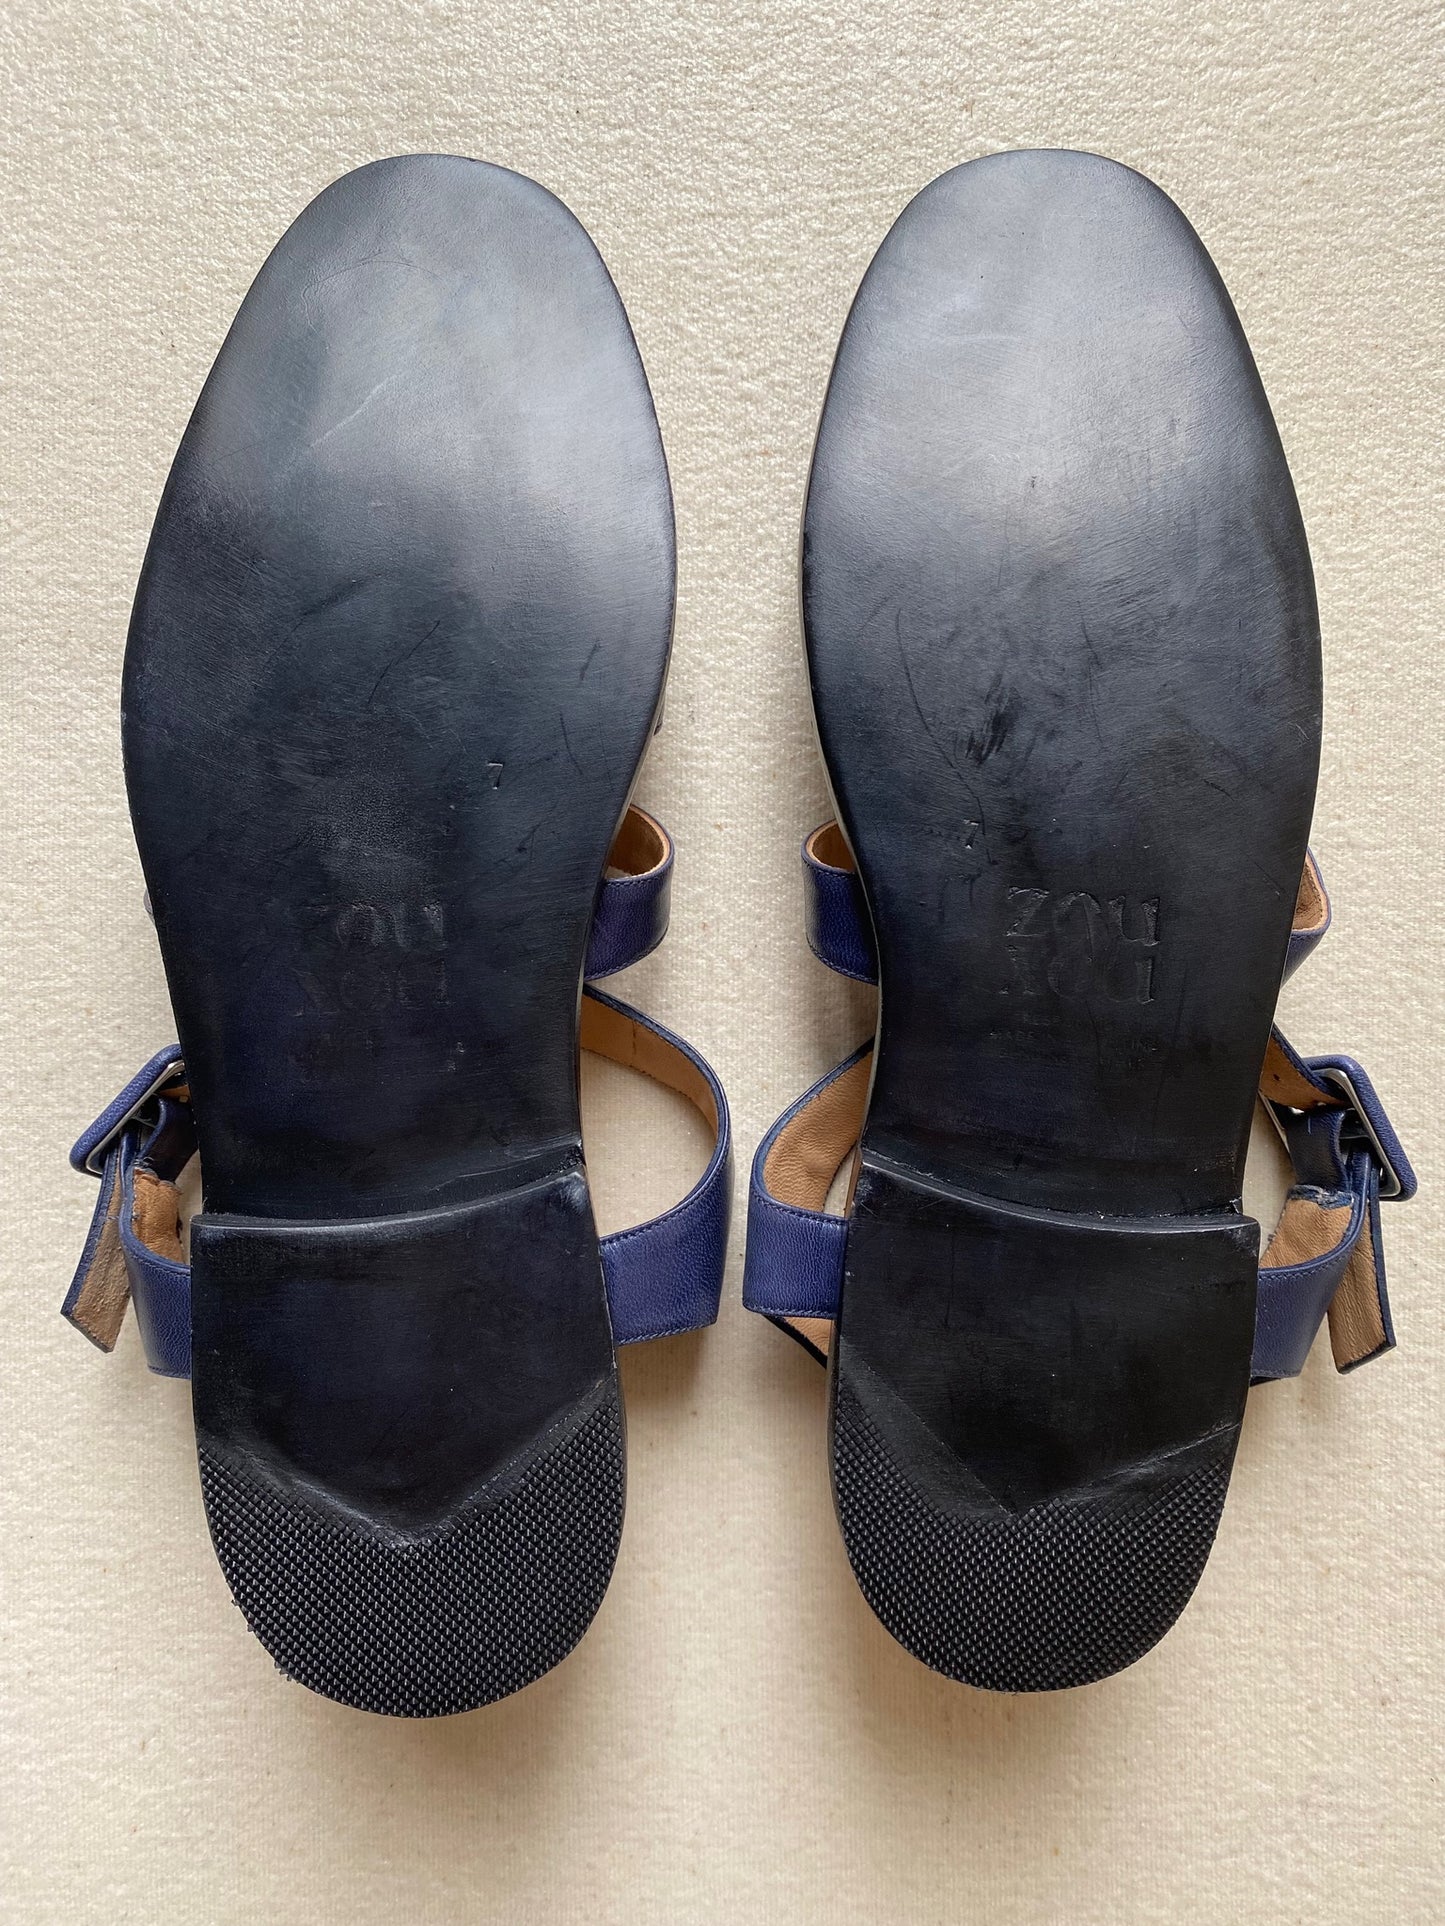 Anto Sandal in Indigo Size 37